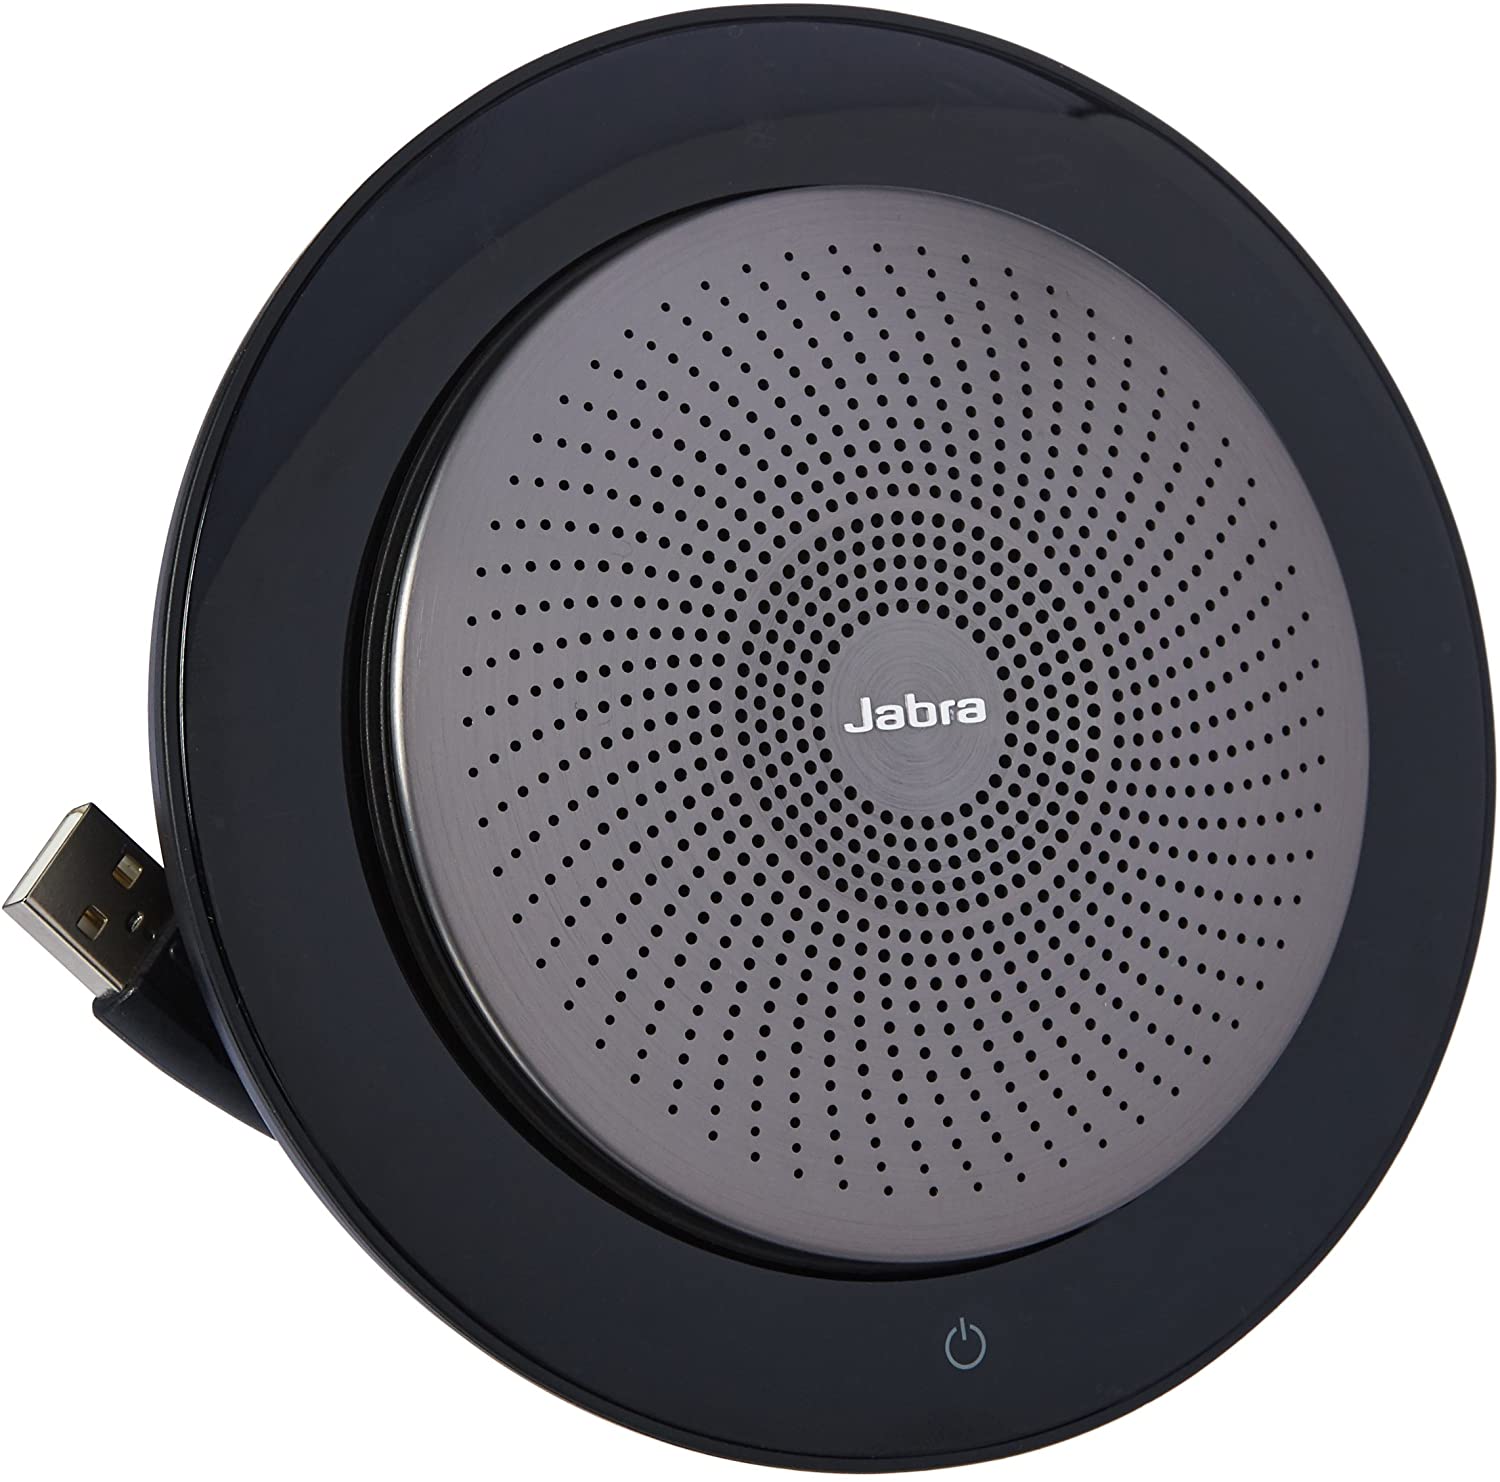 Jabra Consumer Products Jabra Speak 710 Portable Speaker for Music and Calls